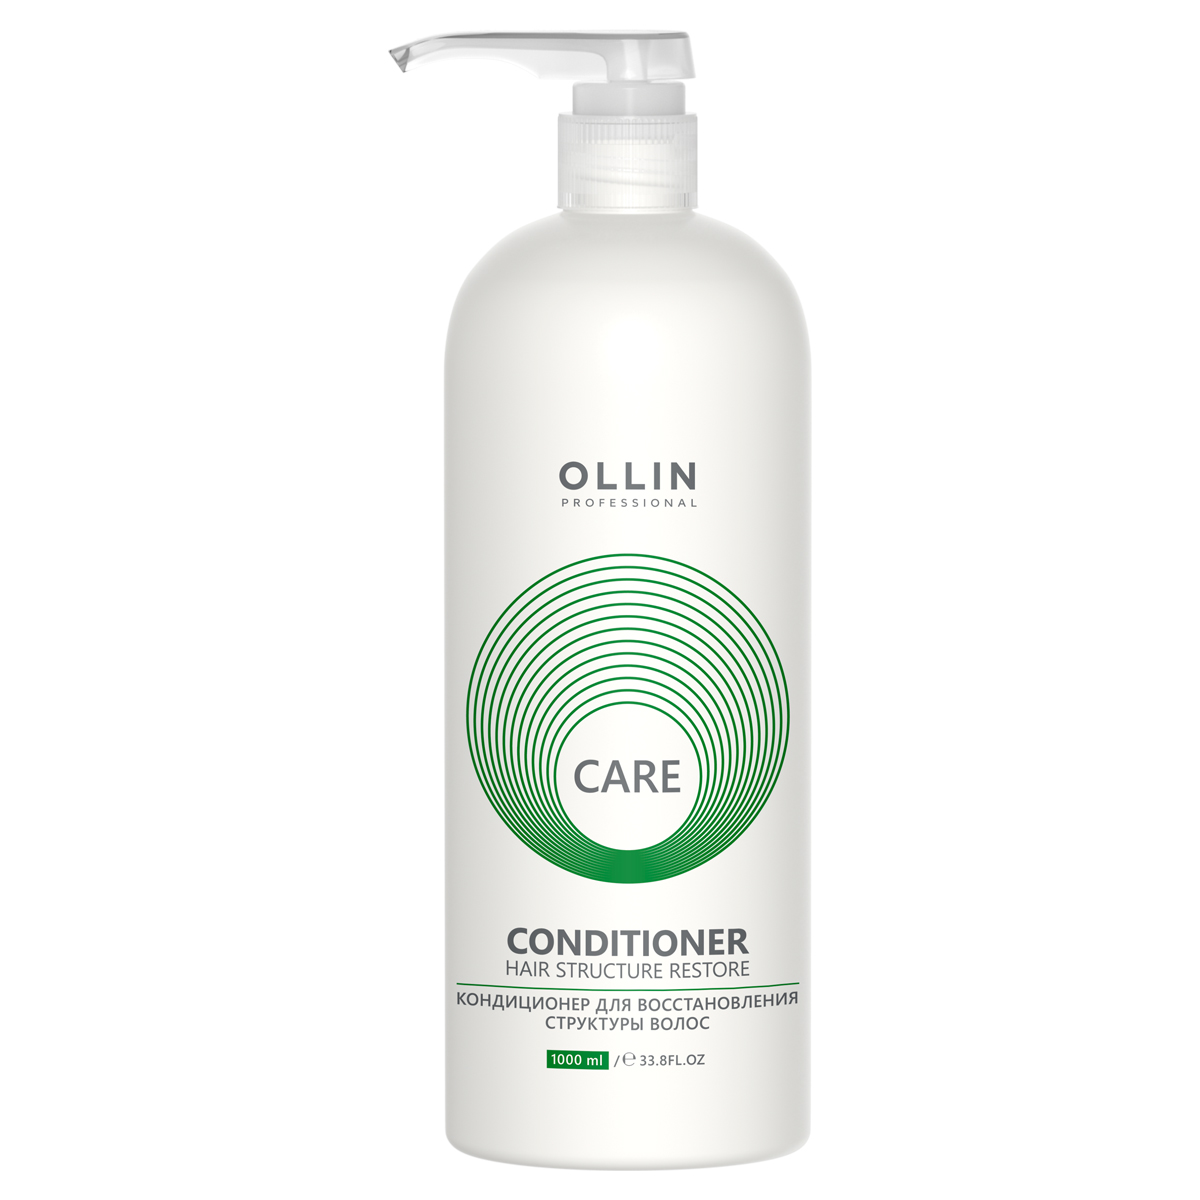 Ollin Professional Кондиционер для восстановления структуры волос, 1000 мл (Ollin Professional, Care) кондиционер для восстановления структуры волос ollin professional restore conditioner 1000 мл